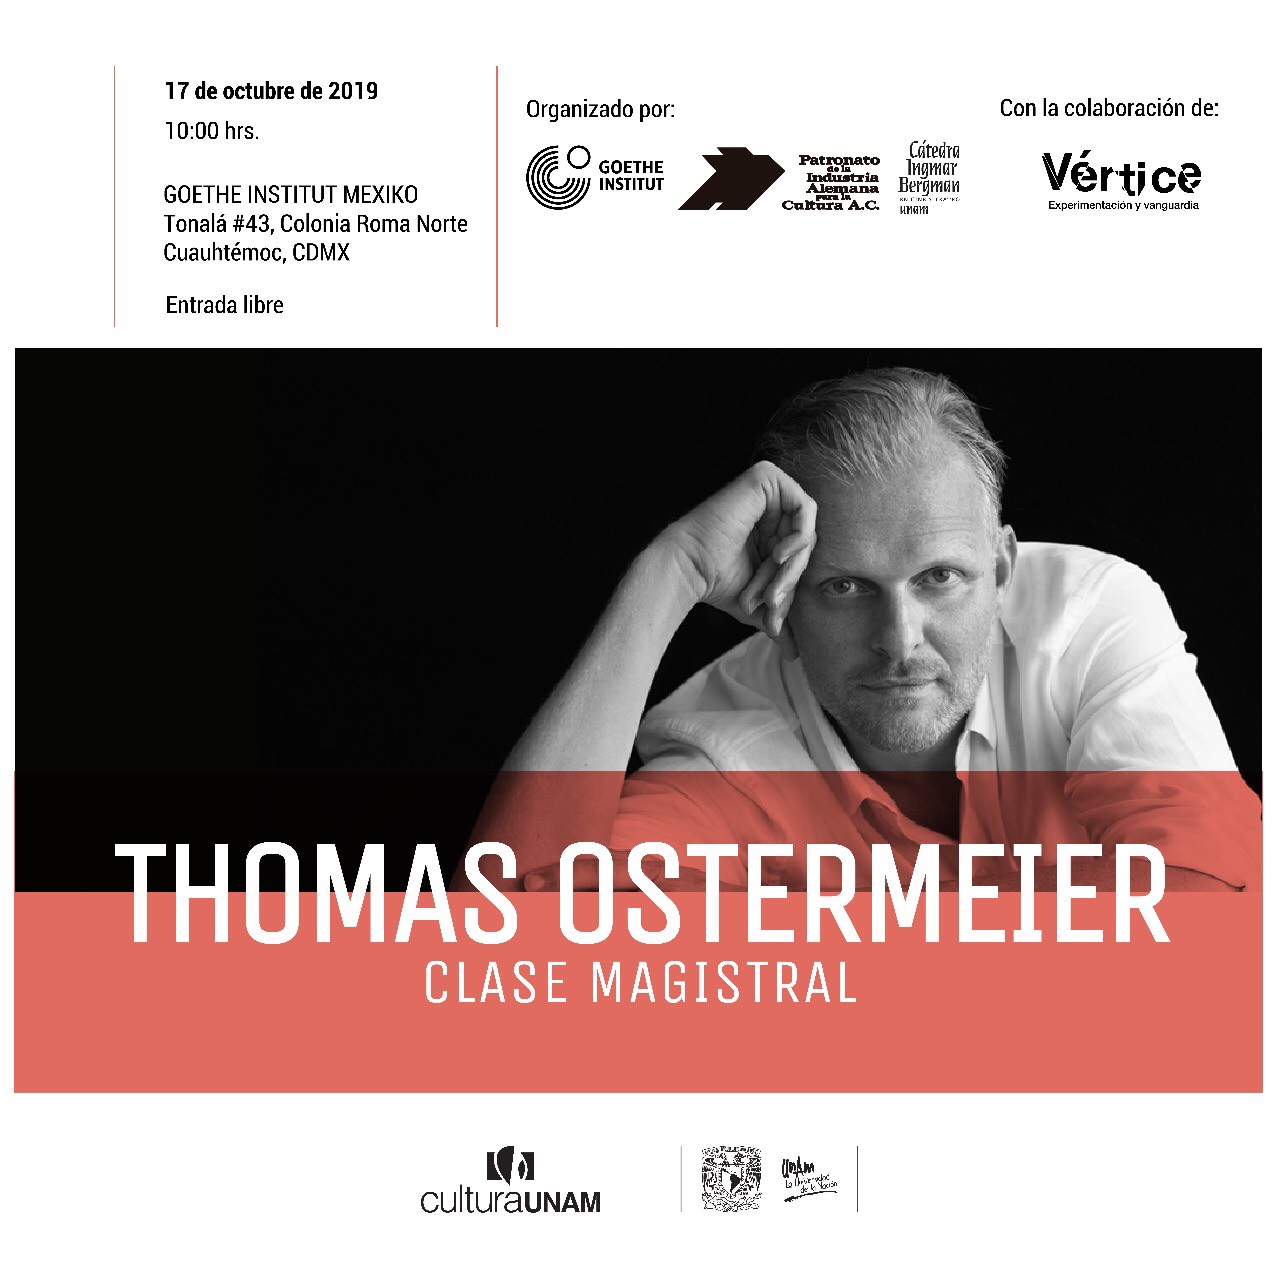 Thomas Ostermeier